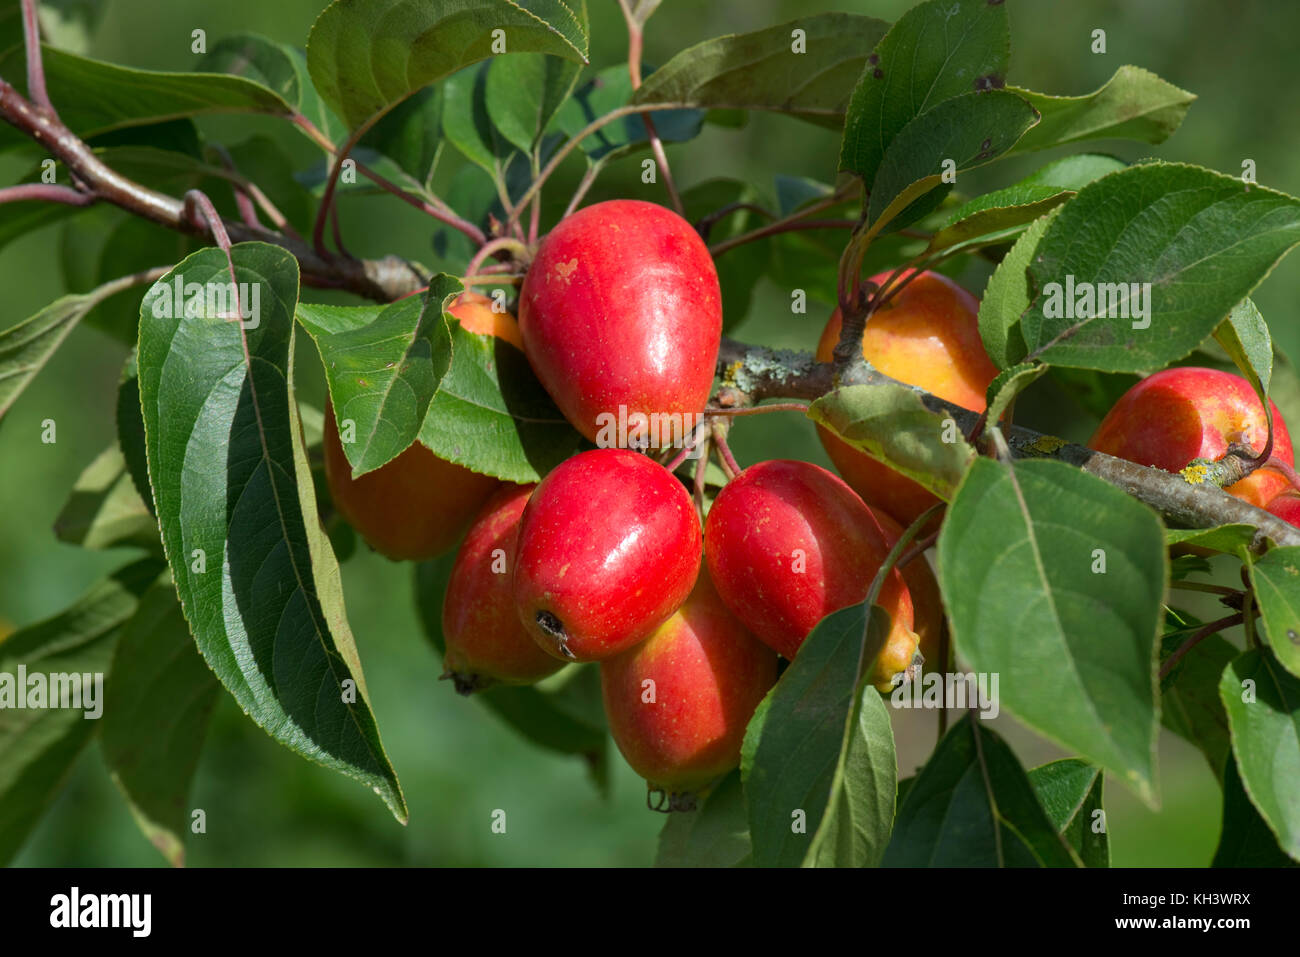 Rosso brillante crab apple frutta, Malus 'John Downie' sull'albero nella tarda estate con verde foglie sane, Berkshire, Agosto Foto Stock